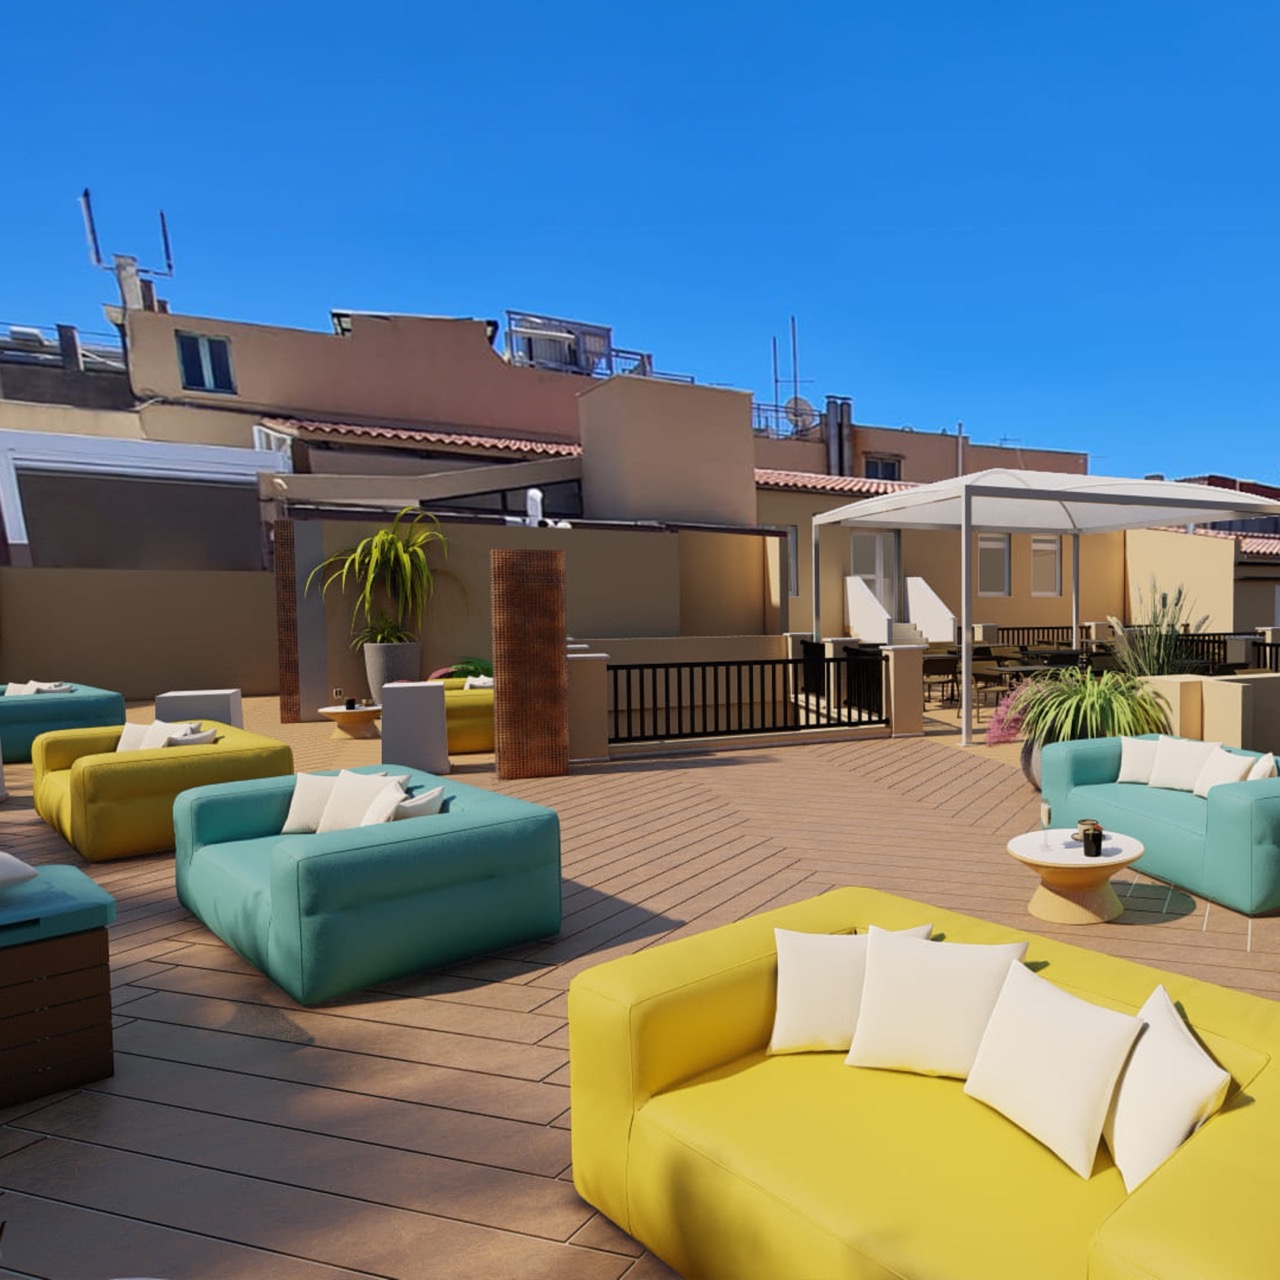 Il nuovo Rooftop a Cagliari presso l’Hotel Italia